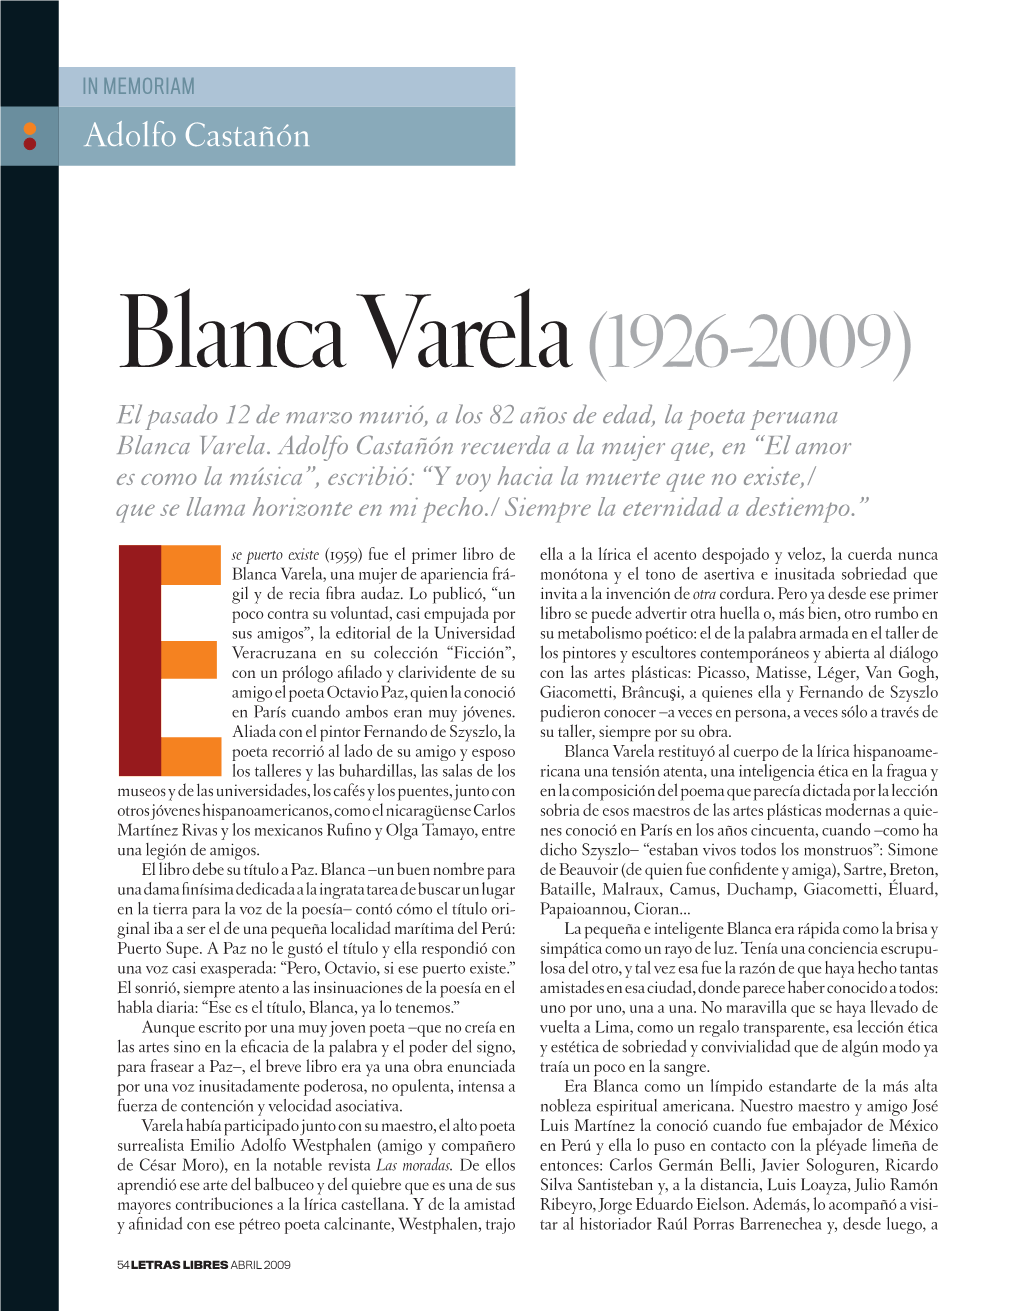 Blanca Varela (1926-2009) El Pasado 12 De Marzo Murió, a Los 82 Años De Edad, La Poeta Peruana Blanca Varela